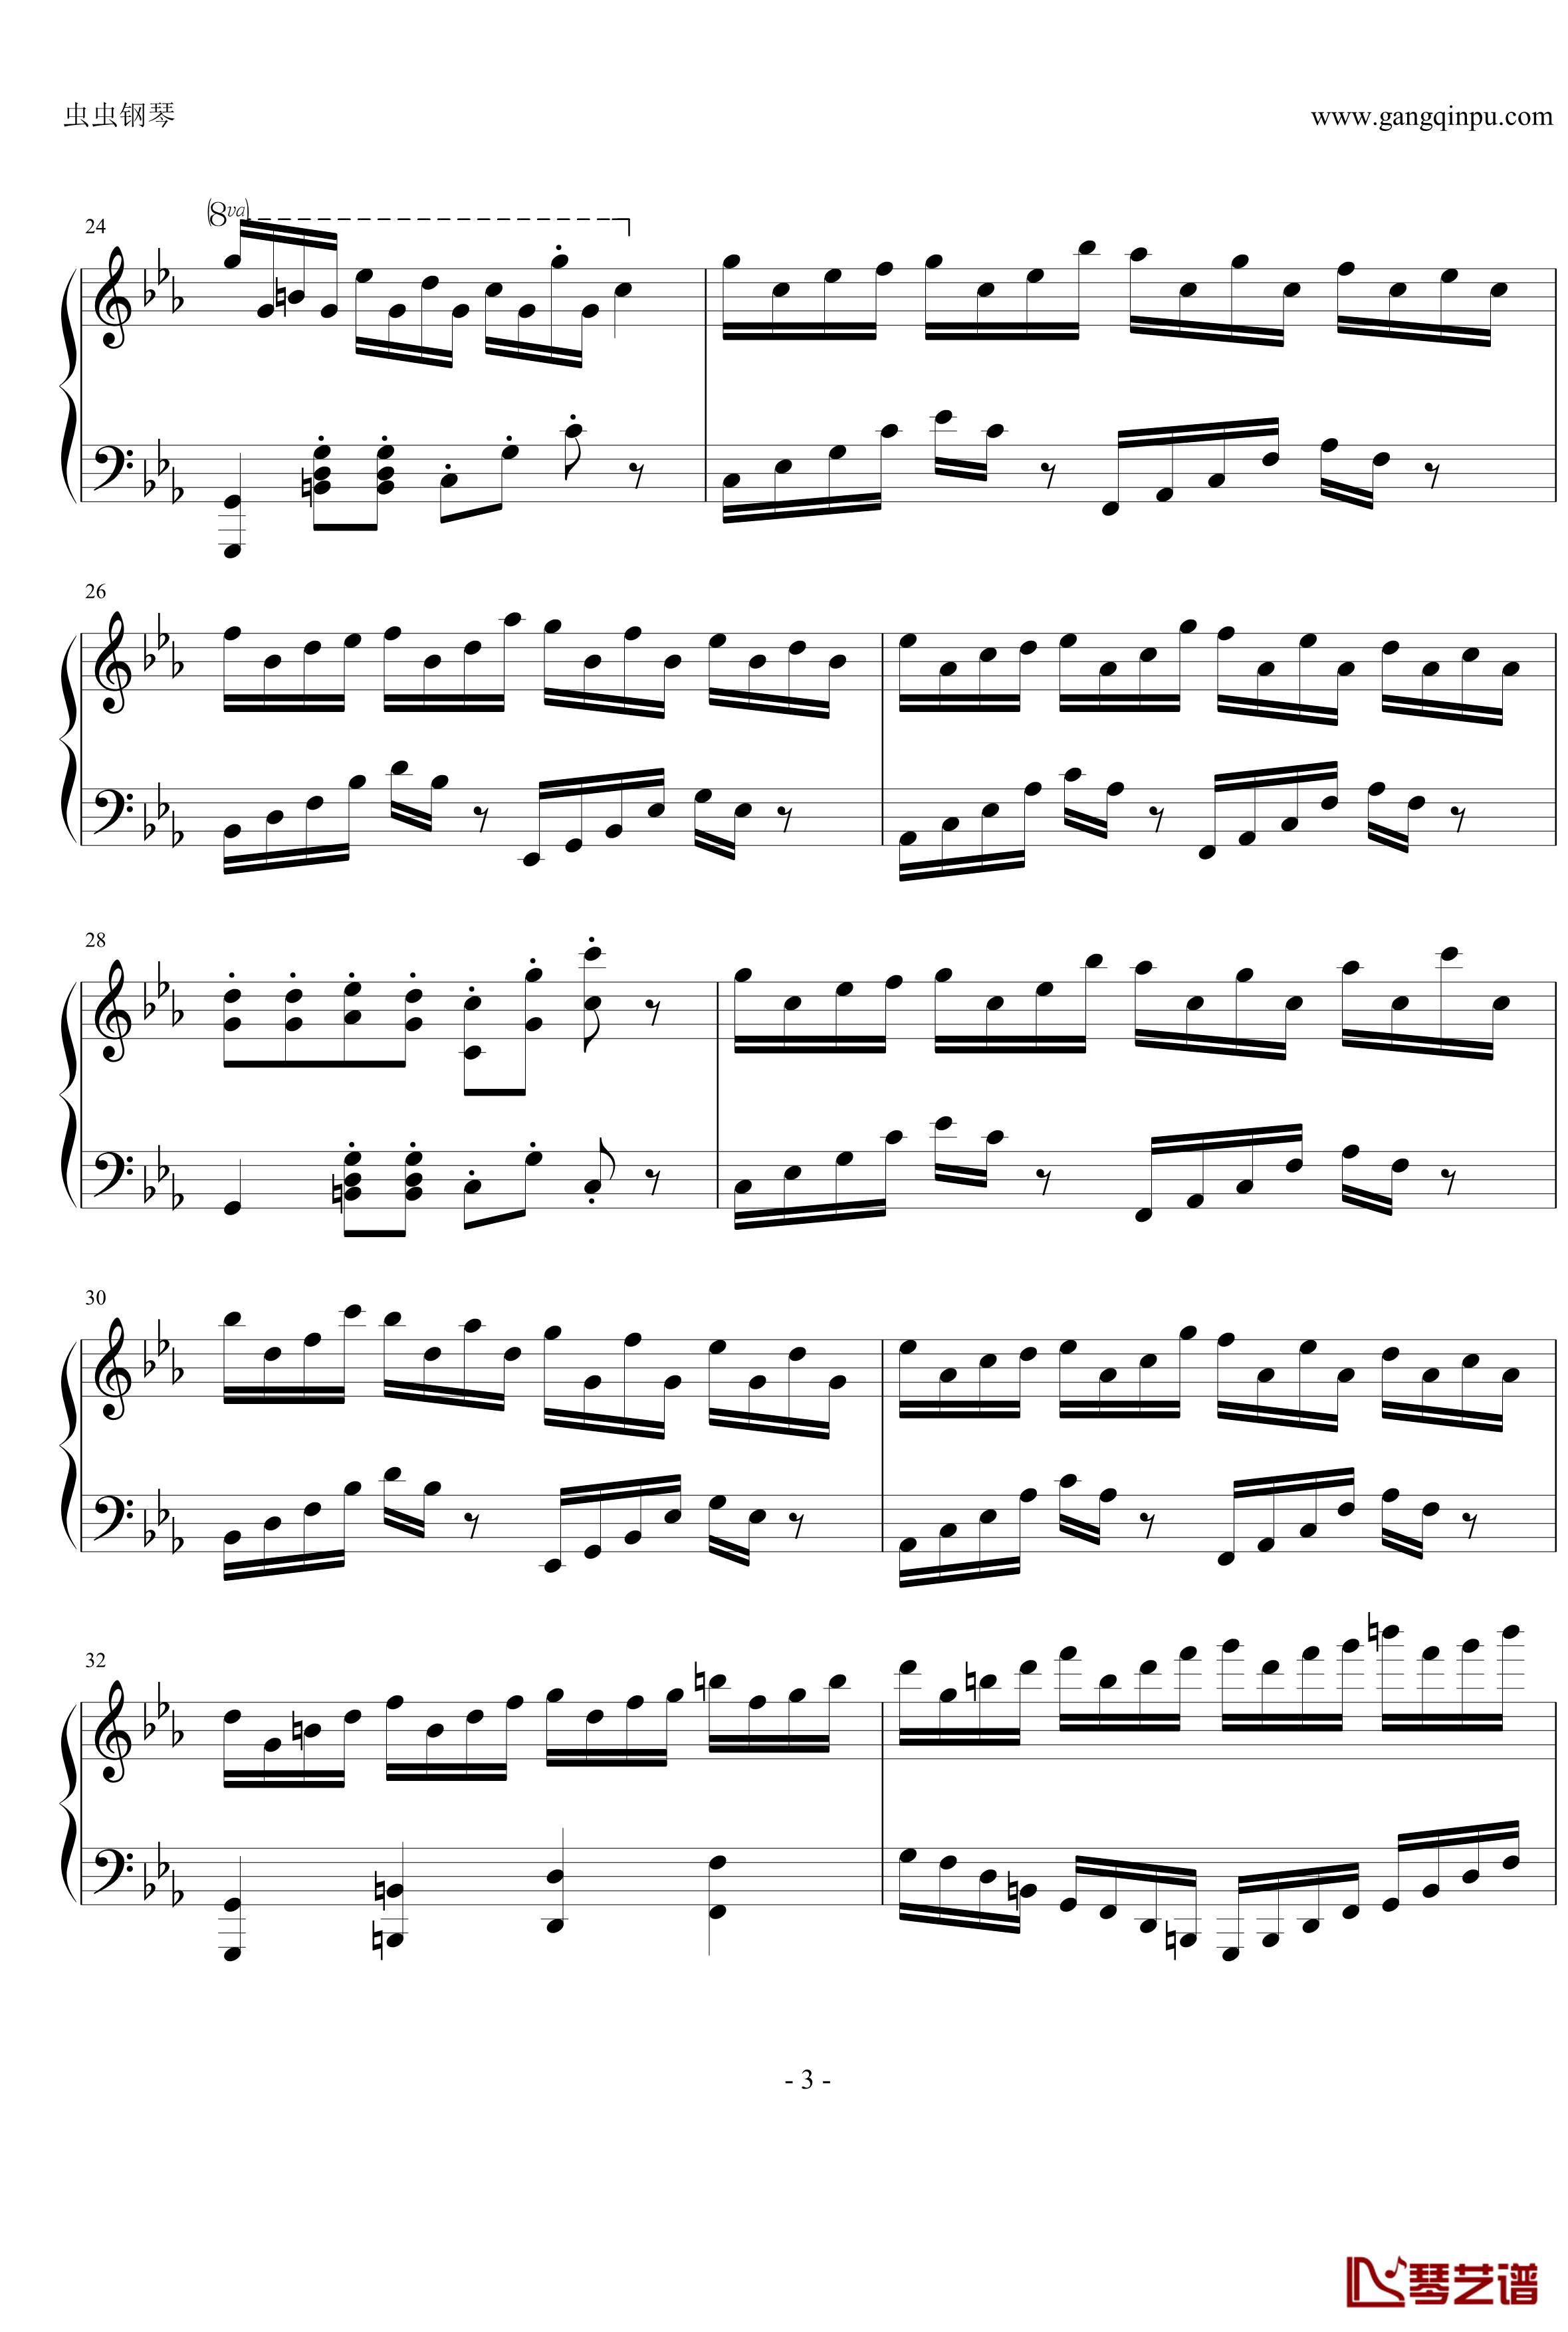 克罗地亚狂想曲钢琴谱-改编独奏版-马克西姆-Maksim·Mrvica3